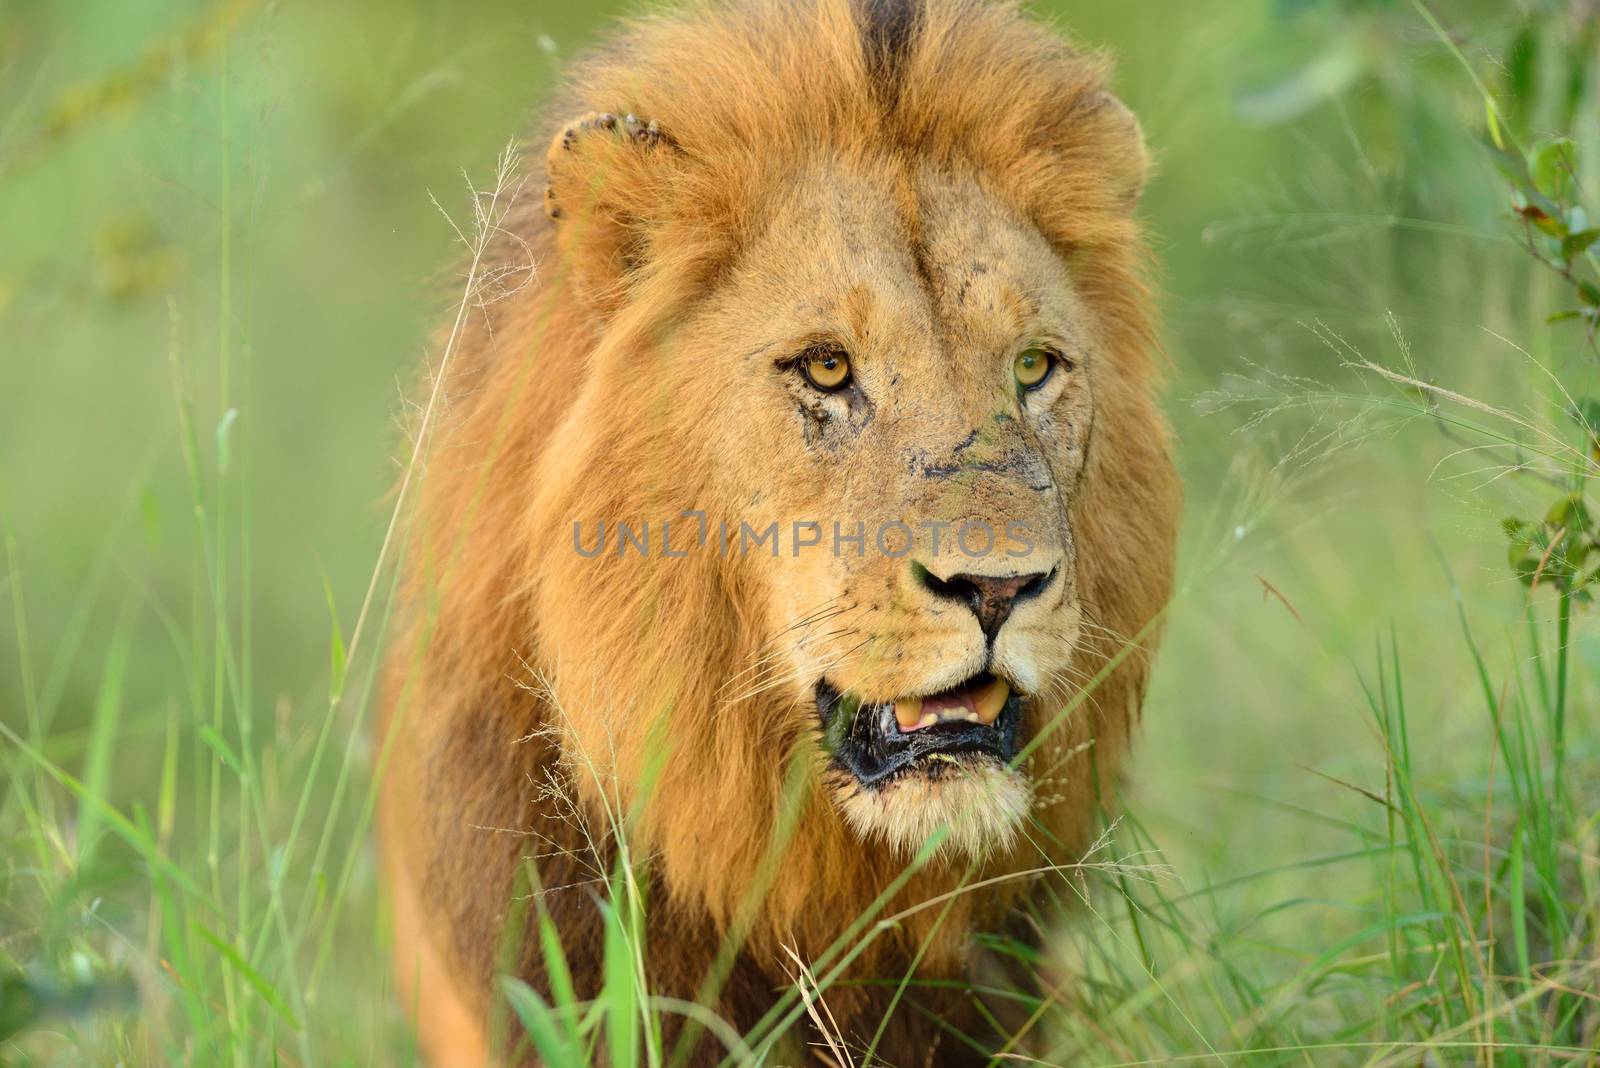 Male lion in the wilderness by ozkanzozmen